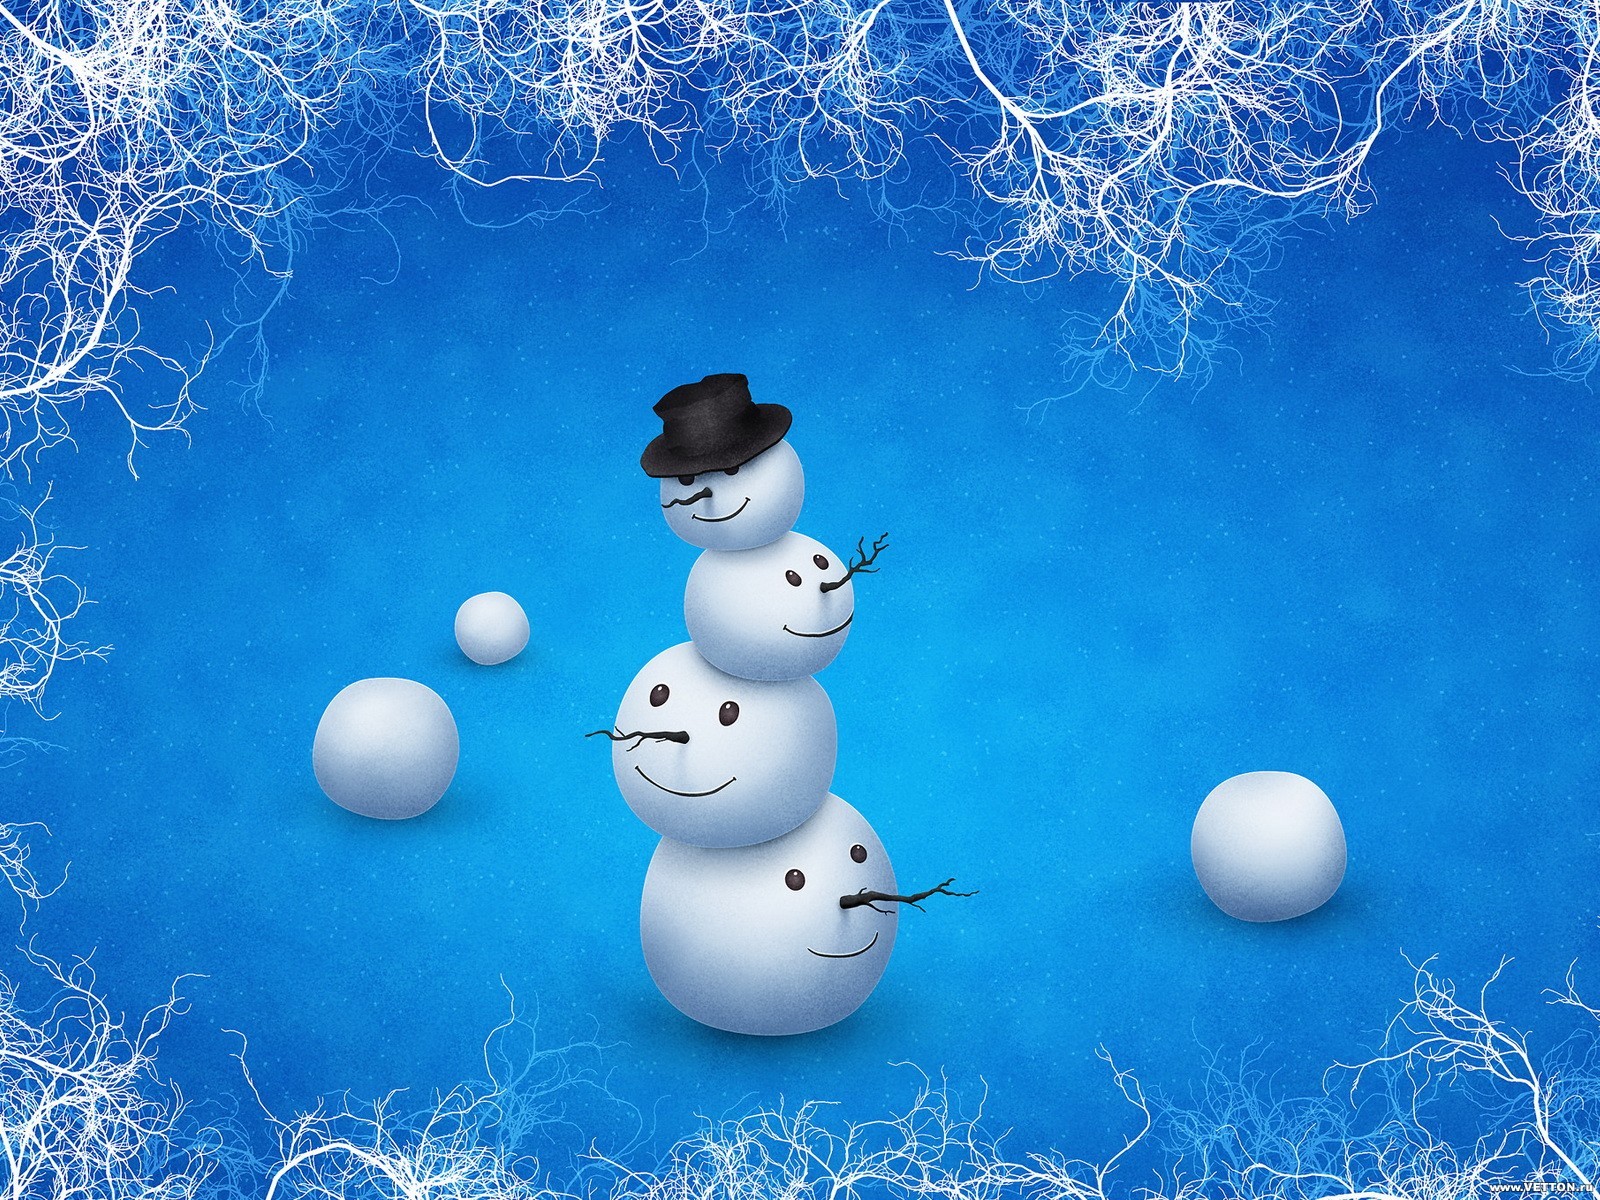 10737 Заставки и Обои Снеговики на телефон. Скачать новый год (new year), снеговики, рождество (christmas, xmas), праздники, зима, рисунки, синие картинки бесплатно